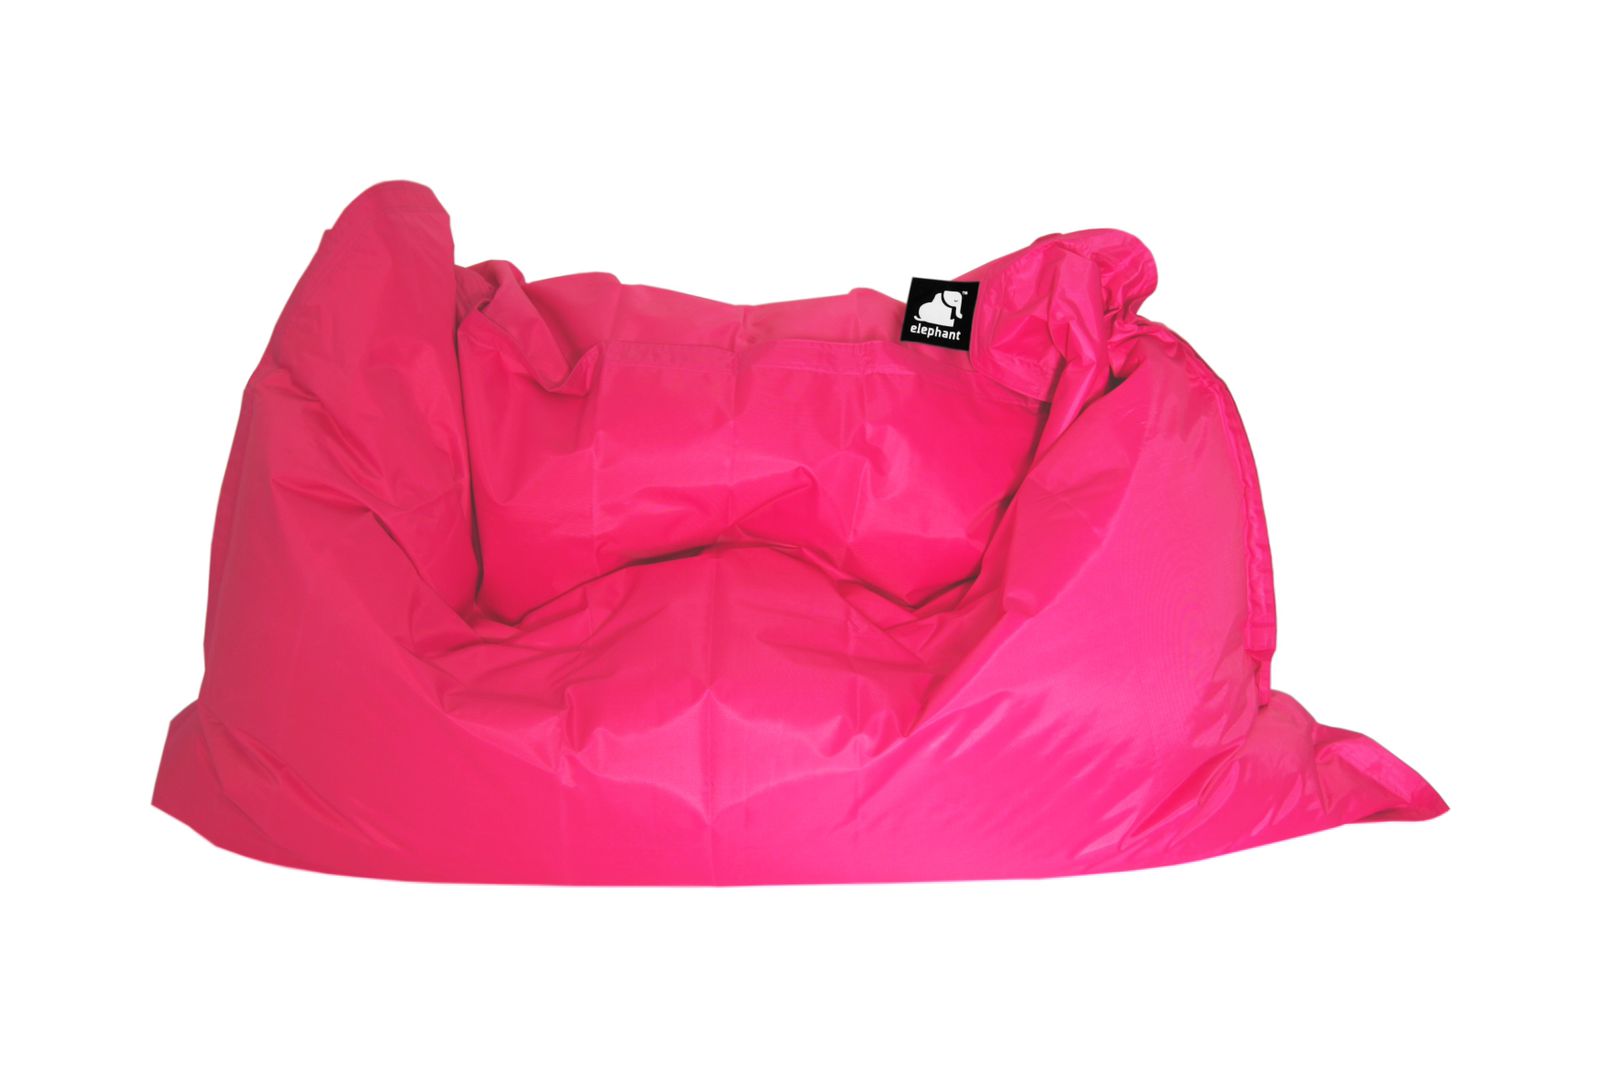 Elephant Jumbo Bean Bag - Shocking Pink